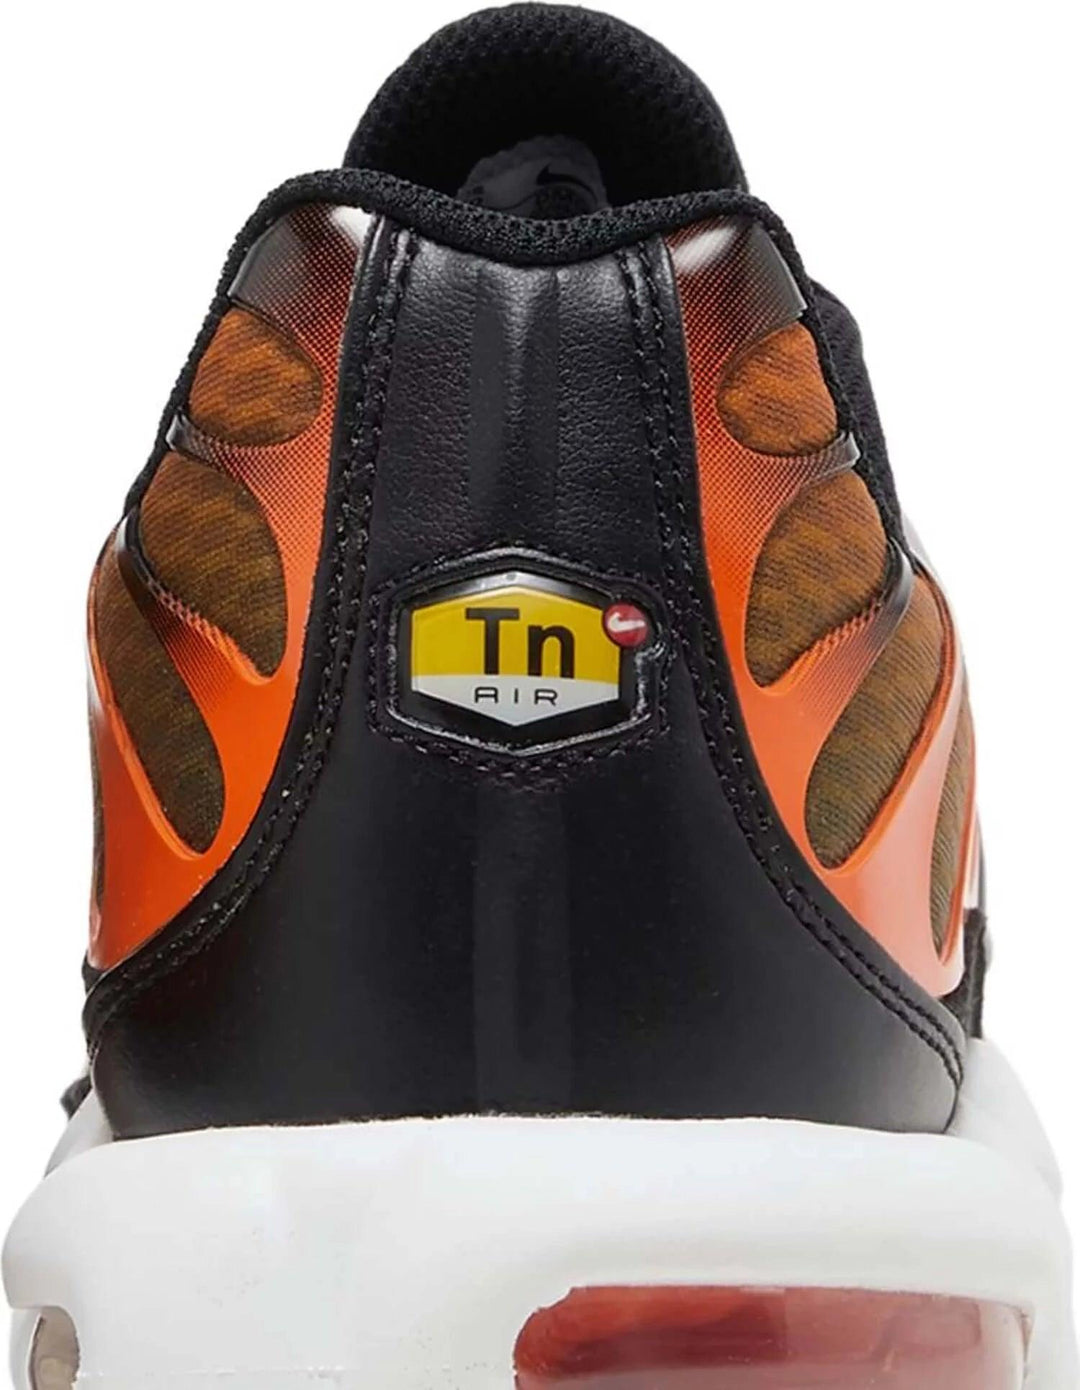 Nike Air Max Plus Safety Orange Black - SOLE AU